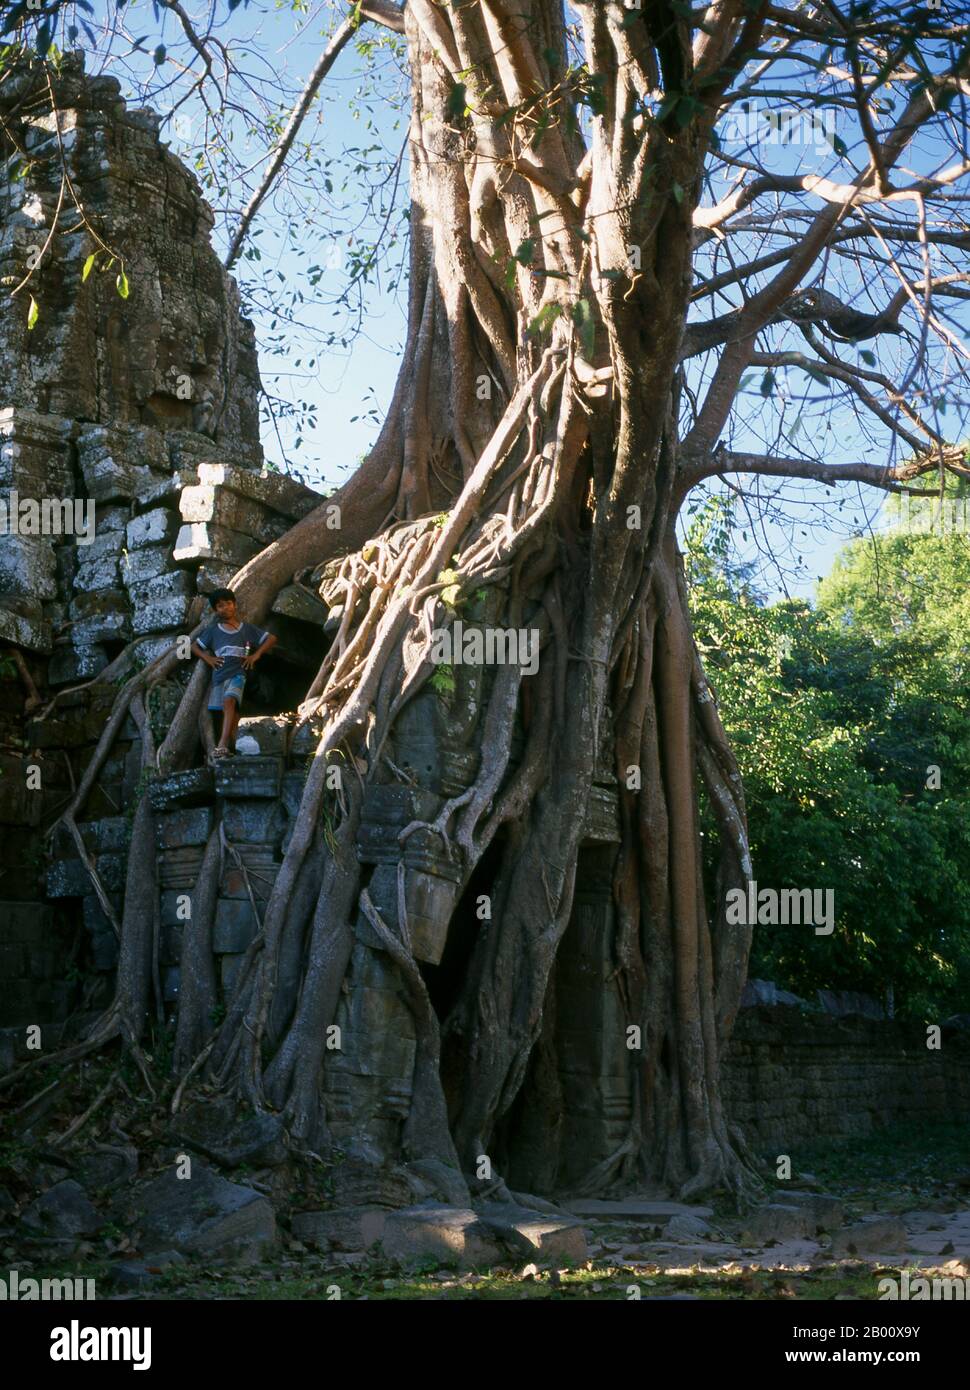 Kambodscha: Gopura und Baum, Ta Som, Angkor. TA Som wurde Ende des 12. Jahrhunderts für König Jayavarman VII. Erbaut und ist seinem Vater Dharanindravarman II. Gewidmet, der von 1150 bis 1160 König des Khmer-Reiches war. Stockfoto